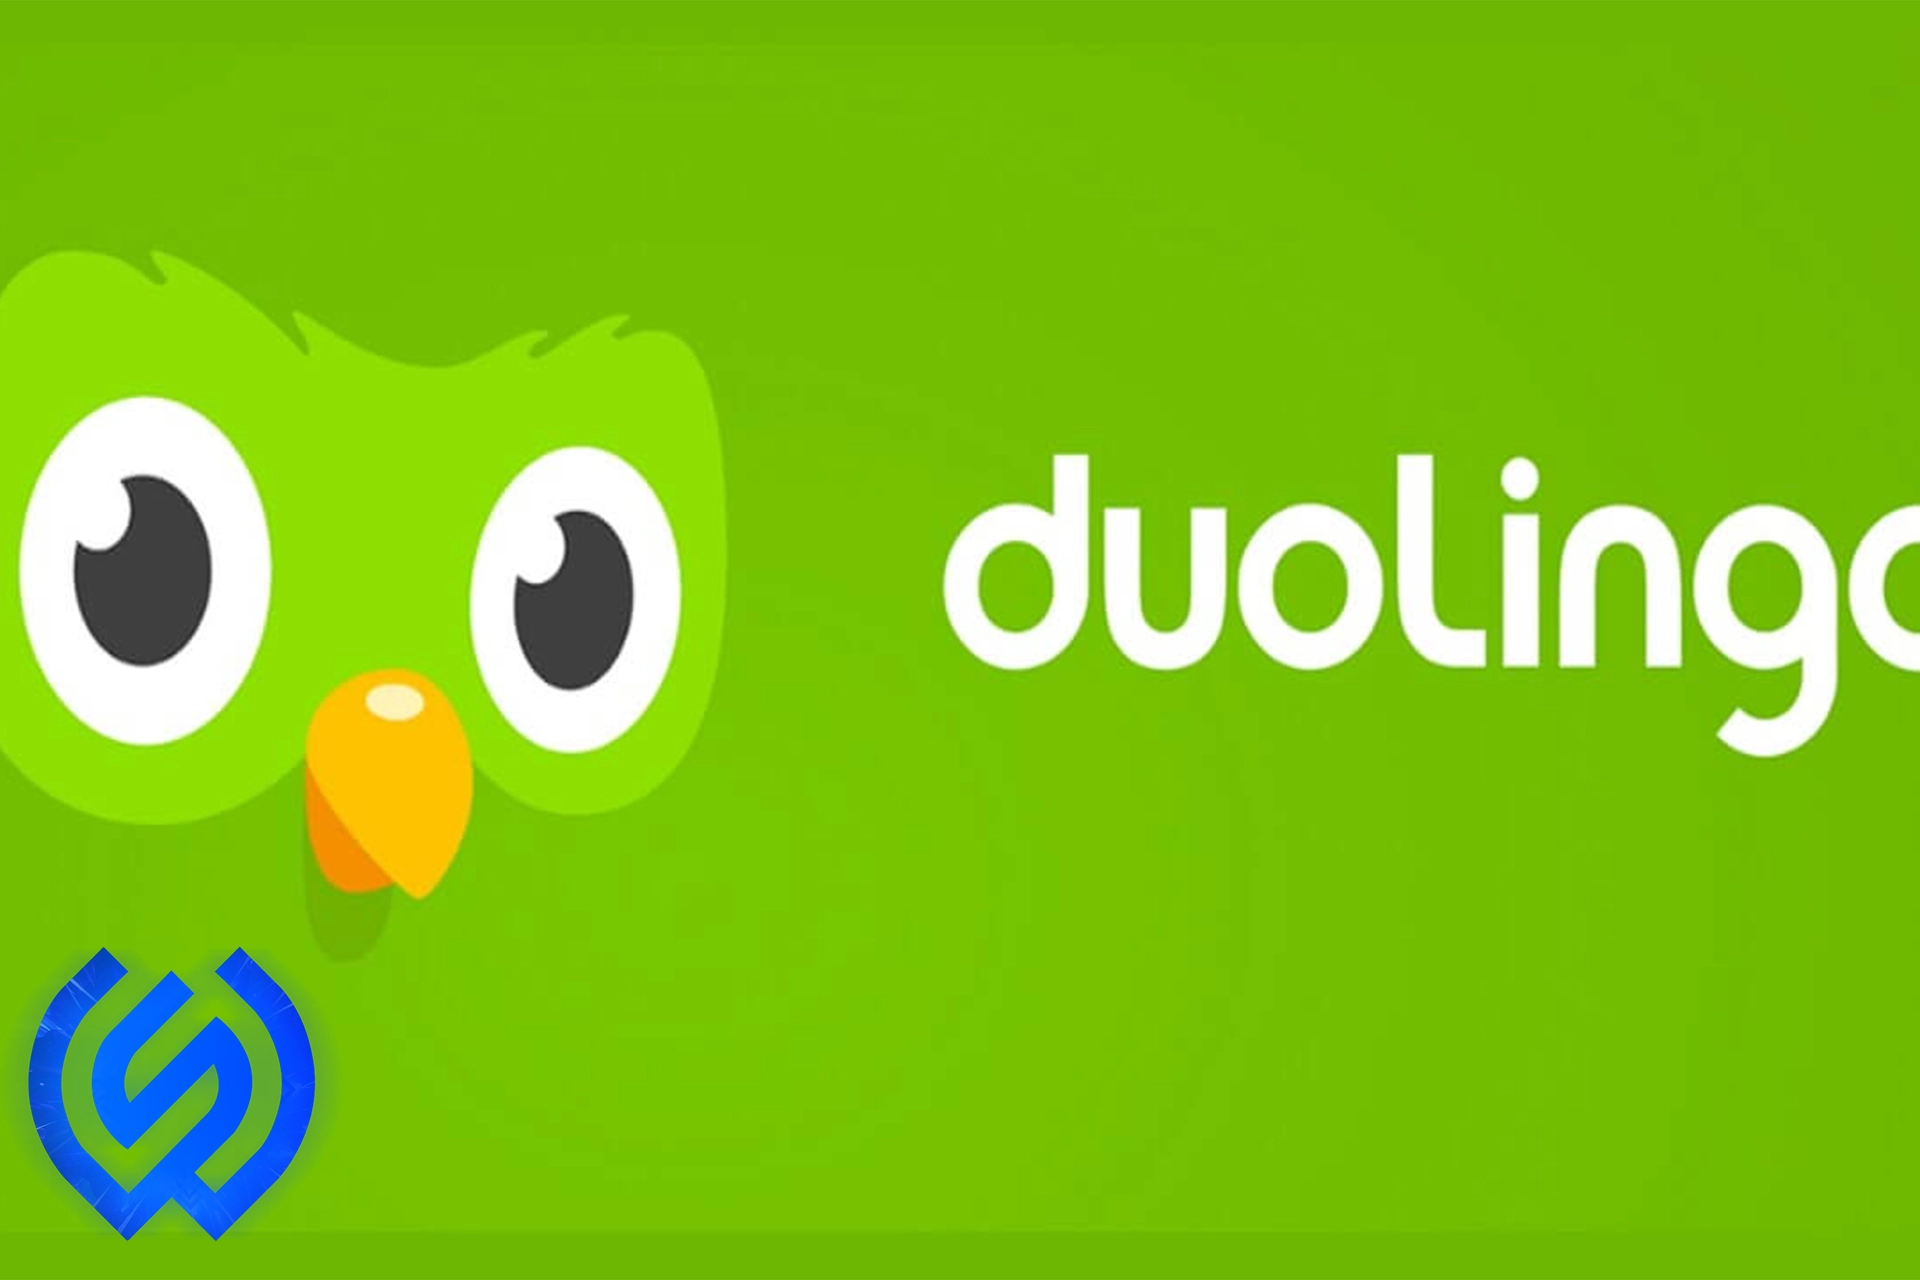 خرید اکانت دولینگو Duolingo ارزان و صددرصد قانونی از واریاشاپ